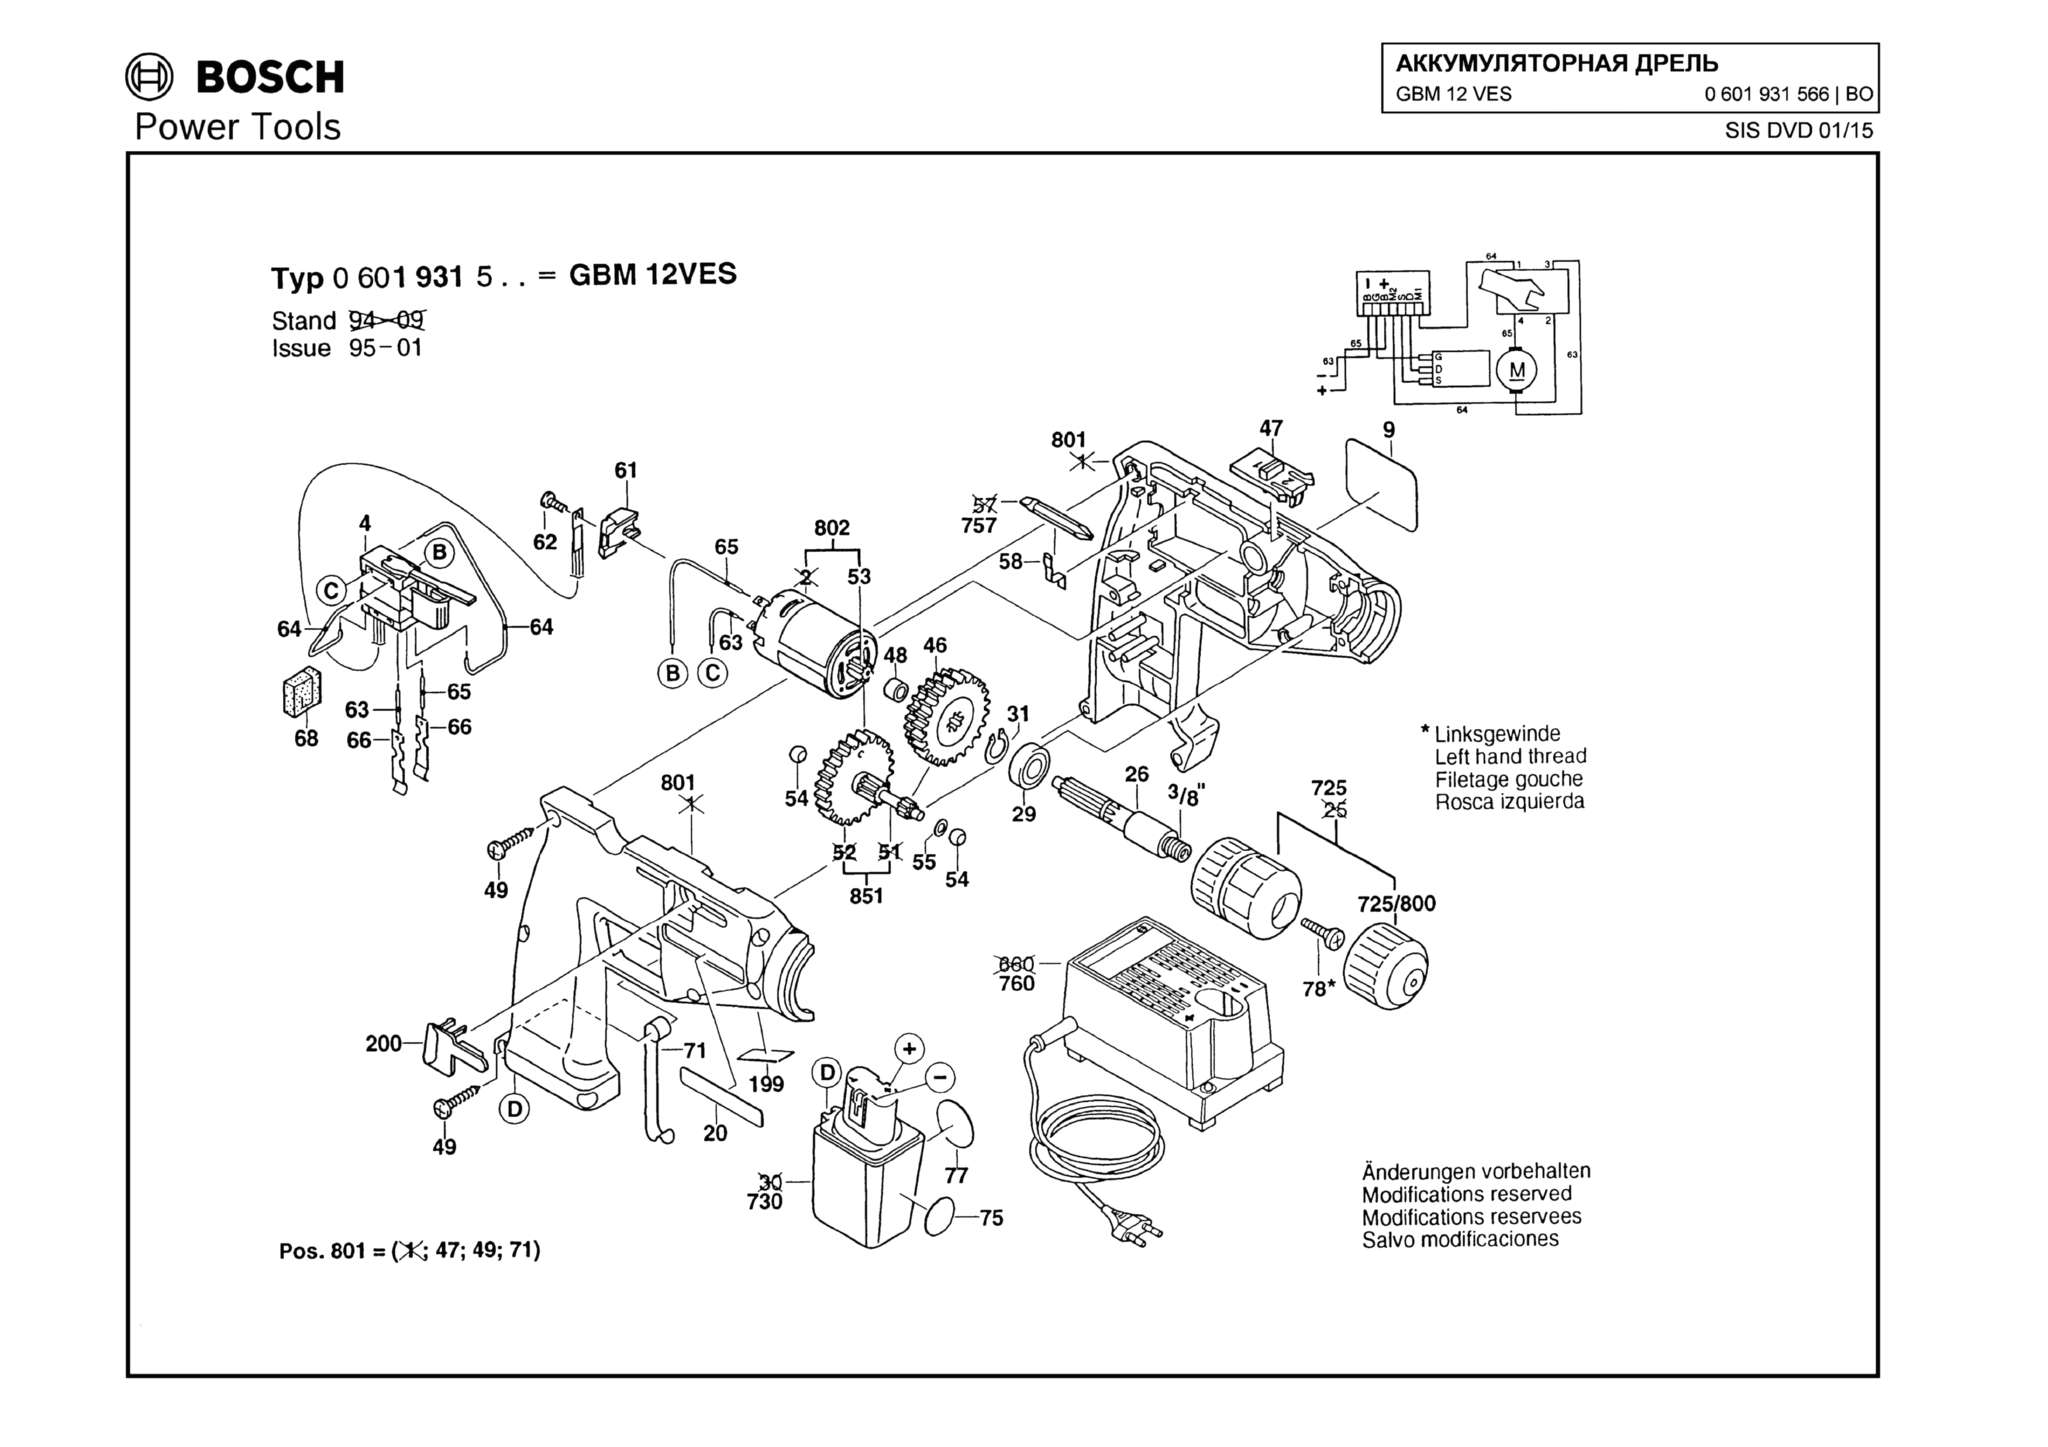 Запчасти, схема и деталировка Bosch GBM 12 VES (ТИП 0601931566)